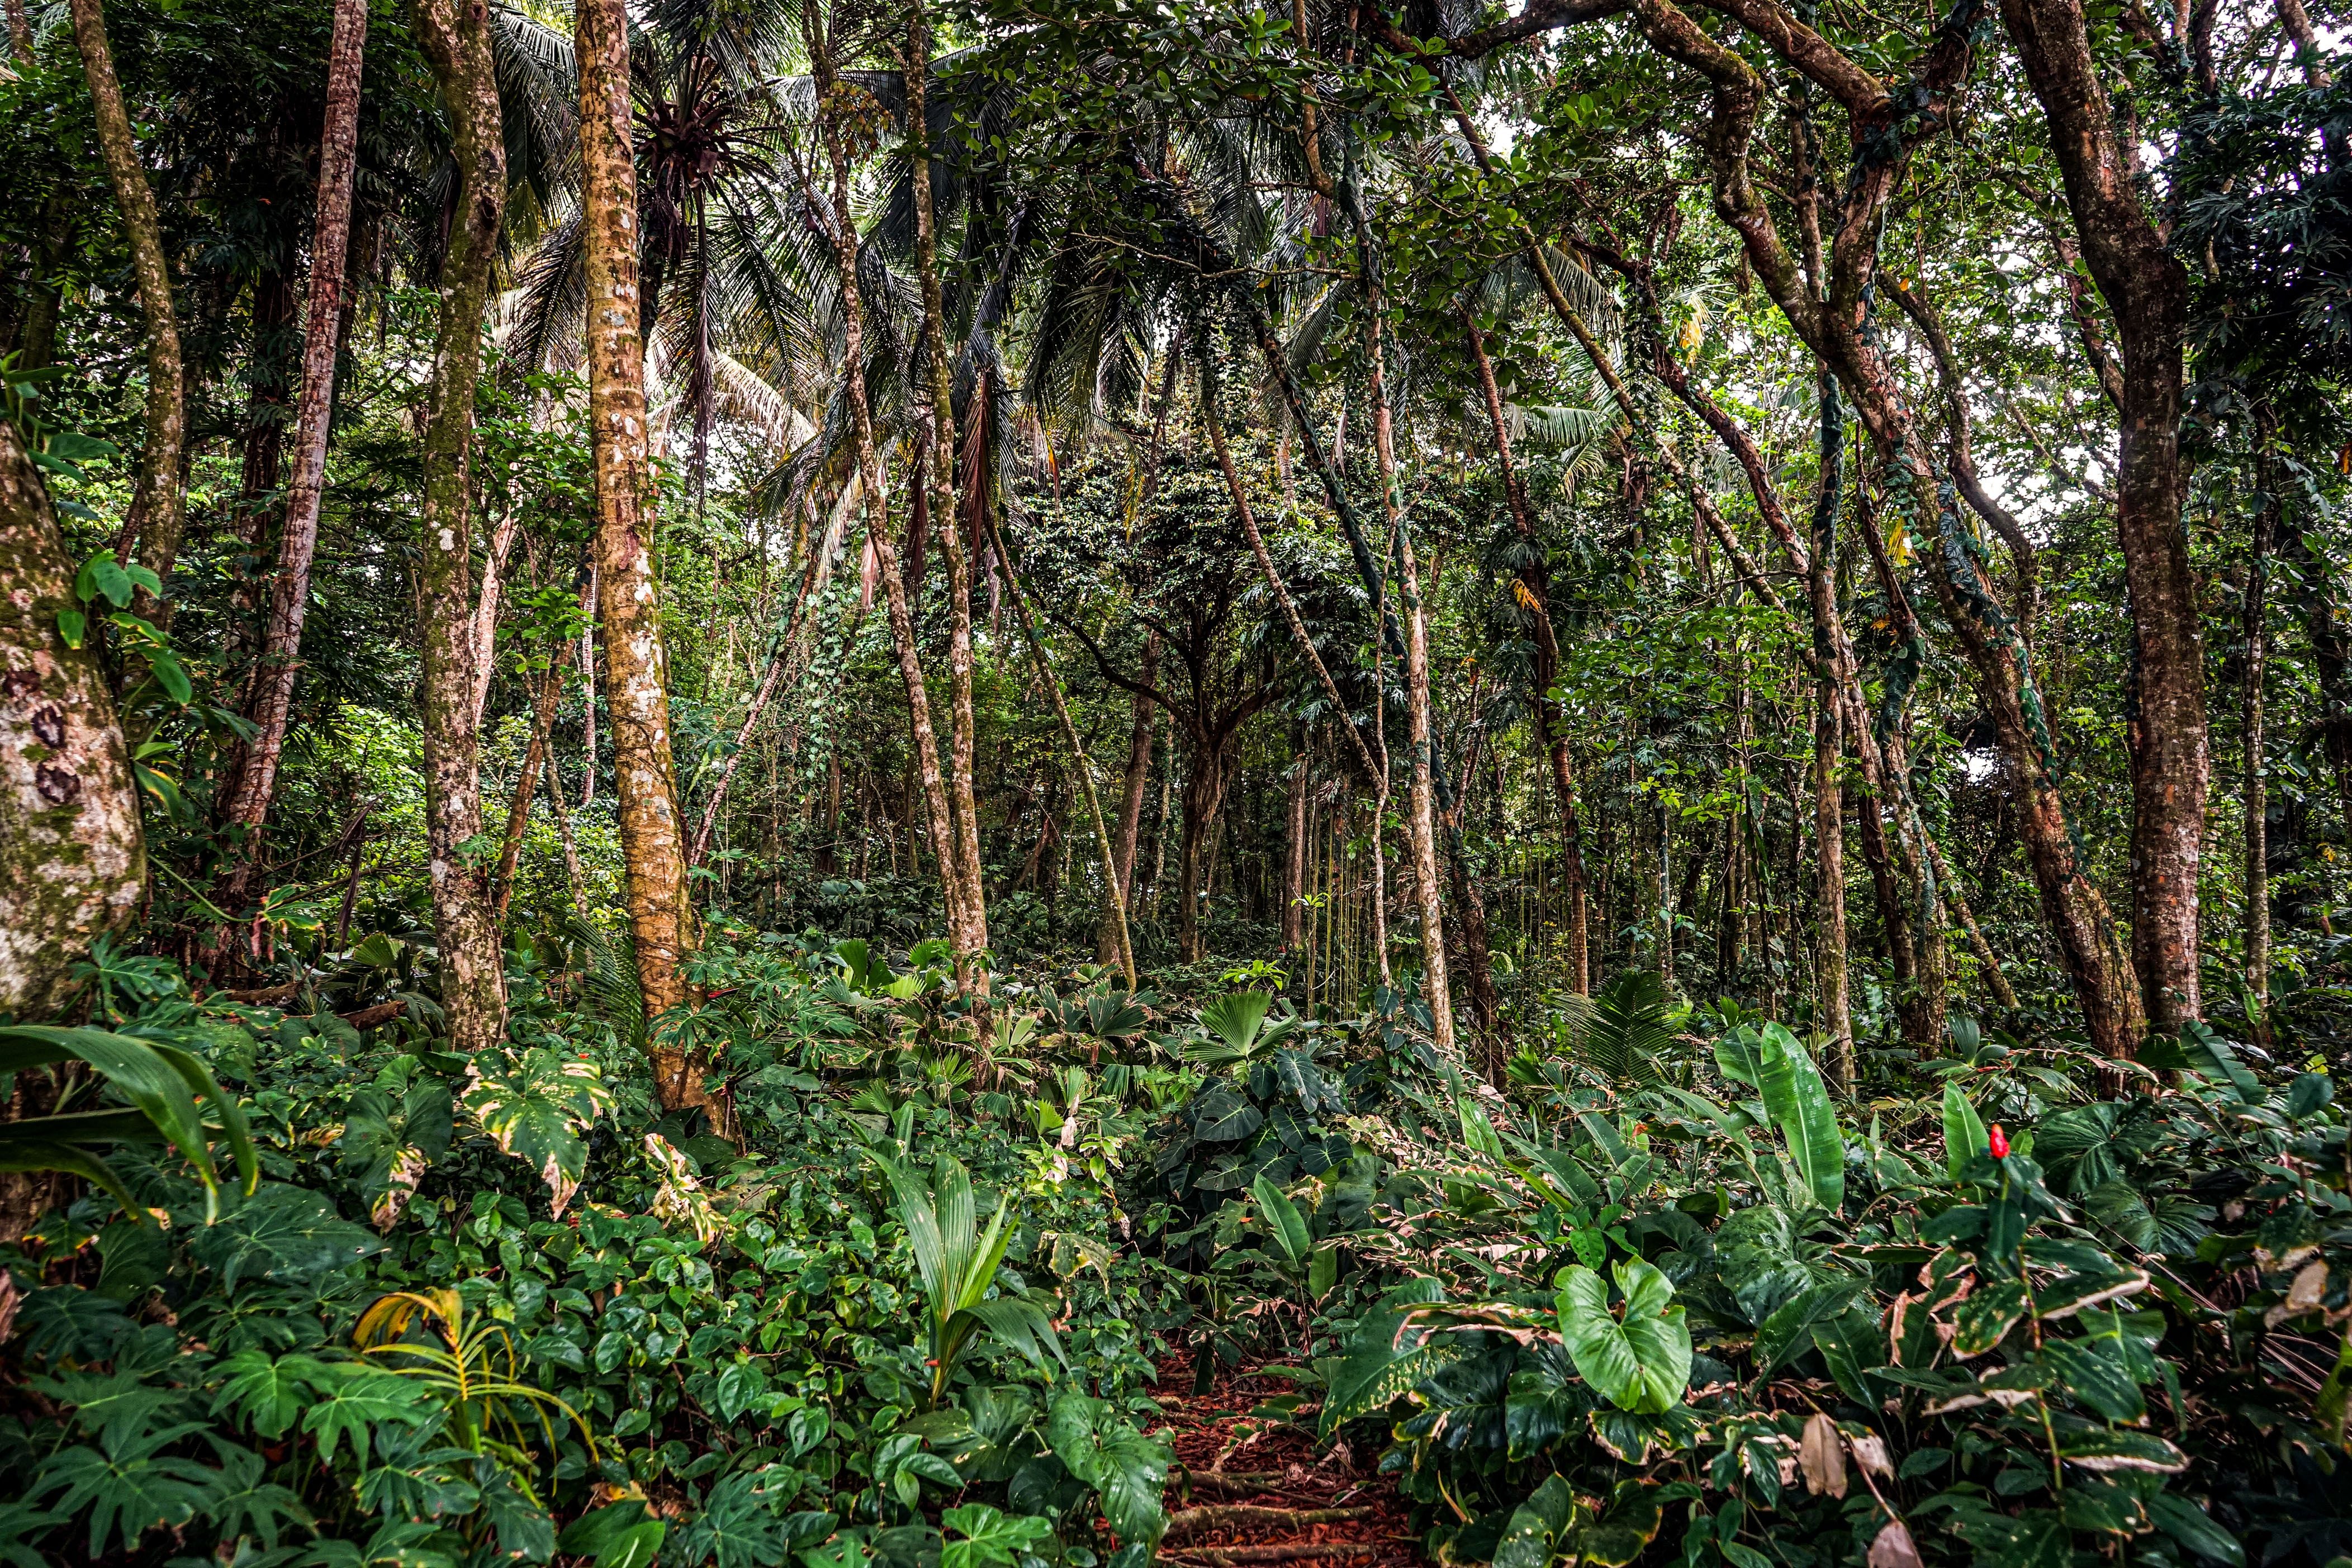 El Refugio de Vida Silvestre Gandoca-Manzanillo, en Talamanca, es una de las zonas más ricas en biodiversidad de Costa Rica, tanto en flora (boscosa y marina), como fauna, incluidas 38 especies de mamíferos, algunos en peligro de extinción. Foto: Alonso Tenorio